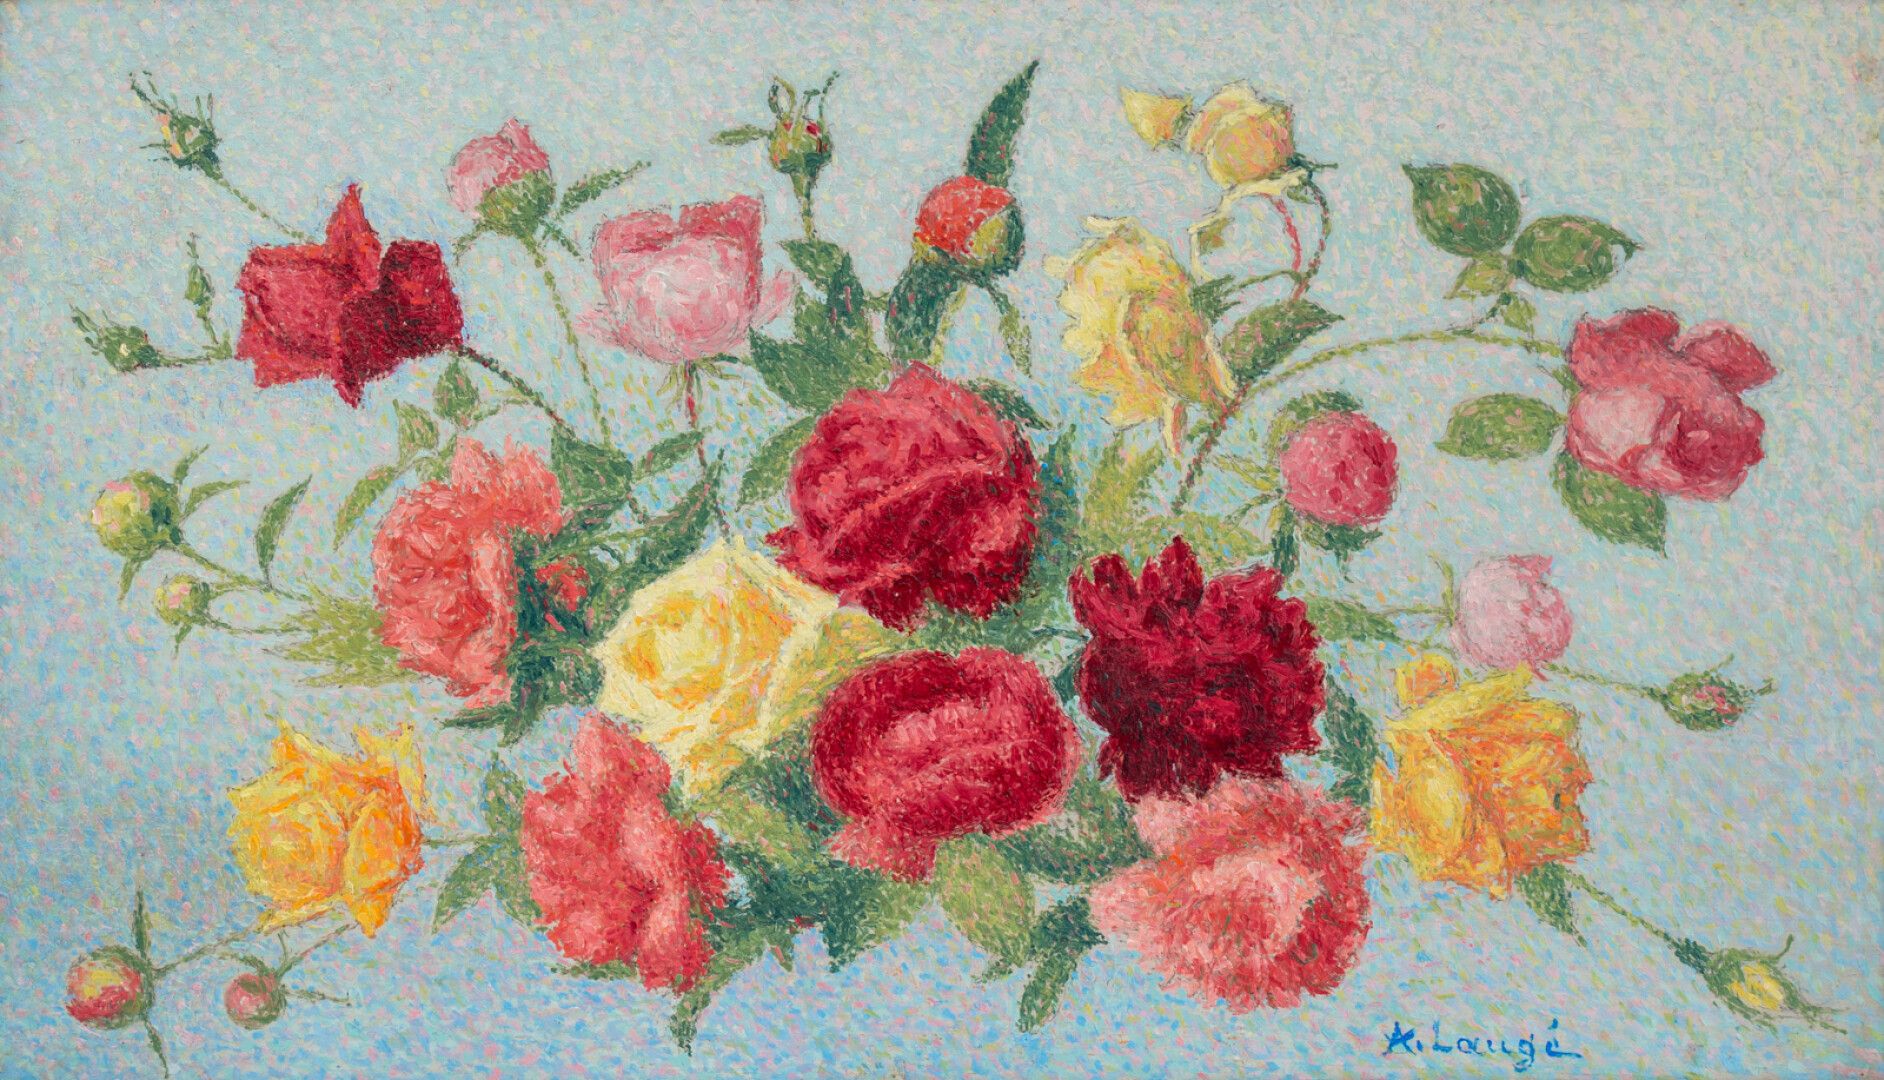 Null 阿奇尔-卢杰(1861-1944)

投掷玫瑰花

板面油画，右下角有签名

48 x 82厘米。